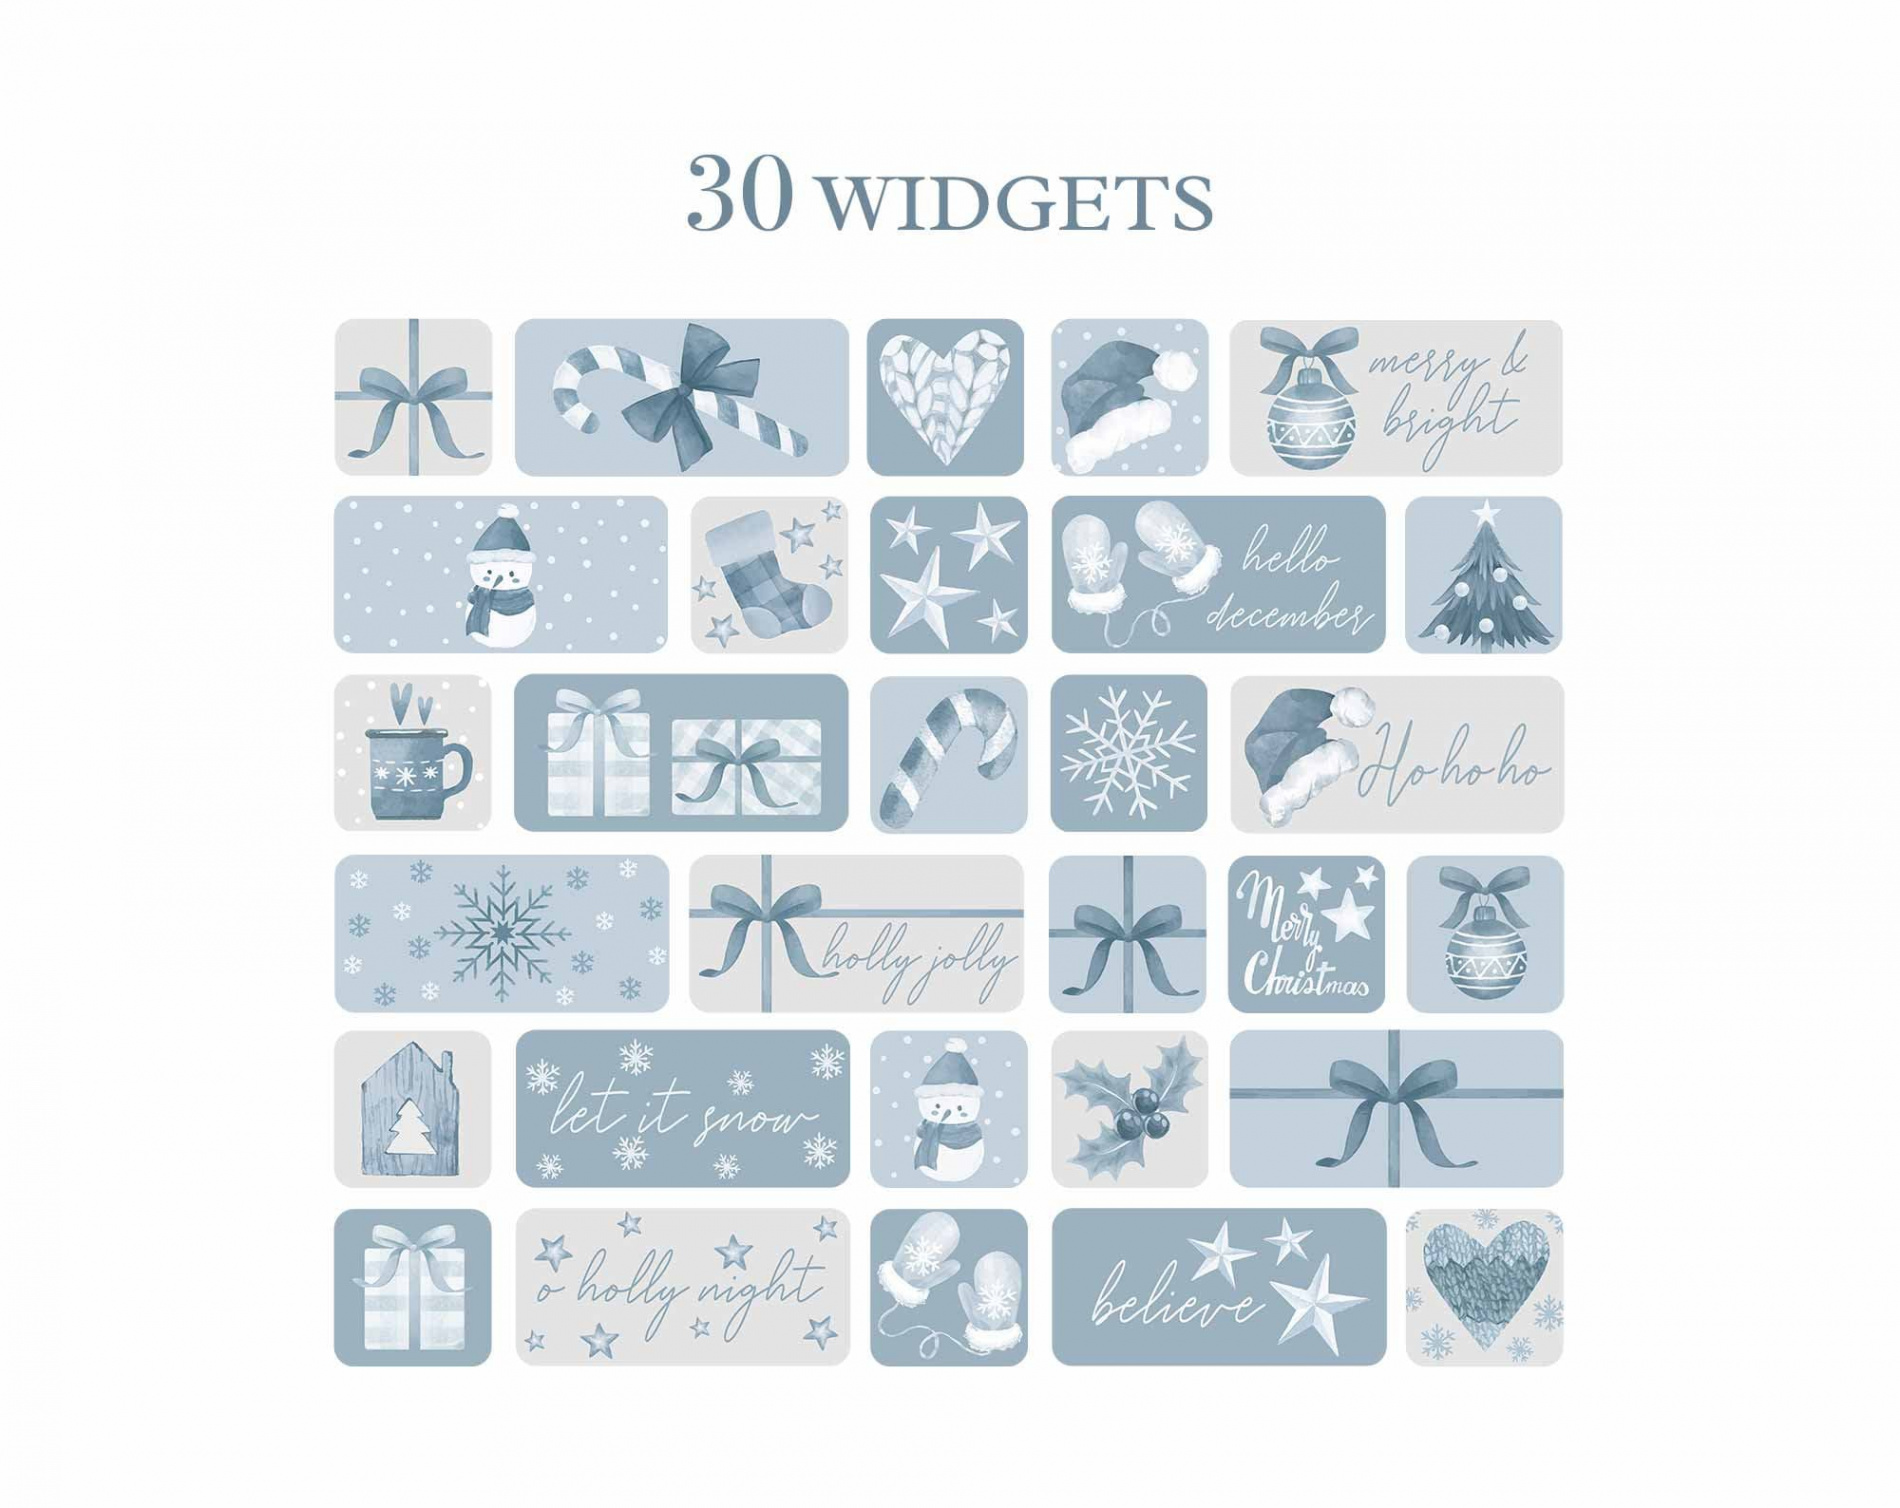 Winter Christmas Widget Pack, Widget Winter Christmas, Christmas Widget  Pack Winter Aesthetic, Christmas Widgets, Winter Christmas Widgets